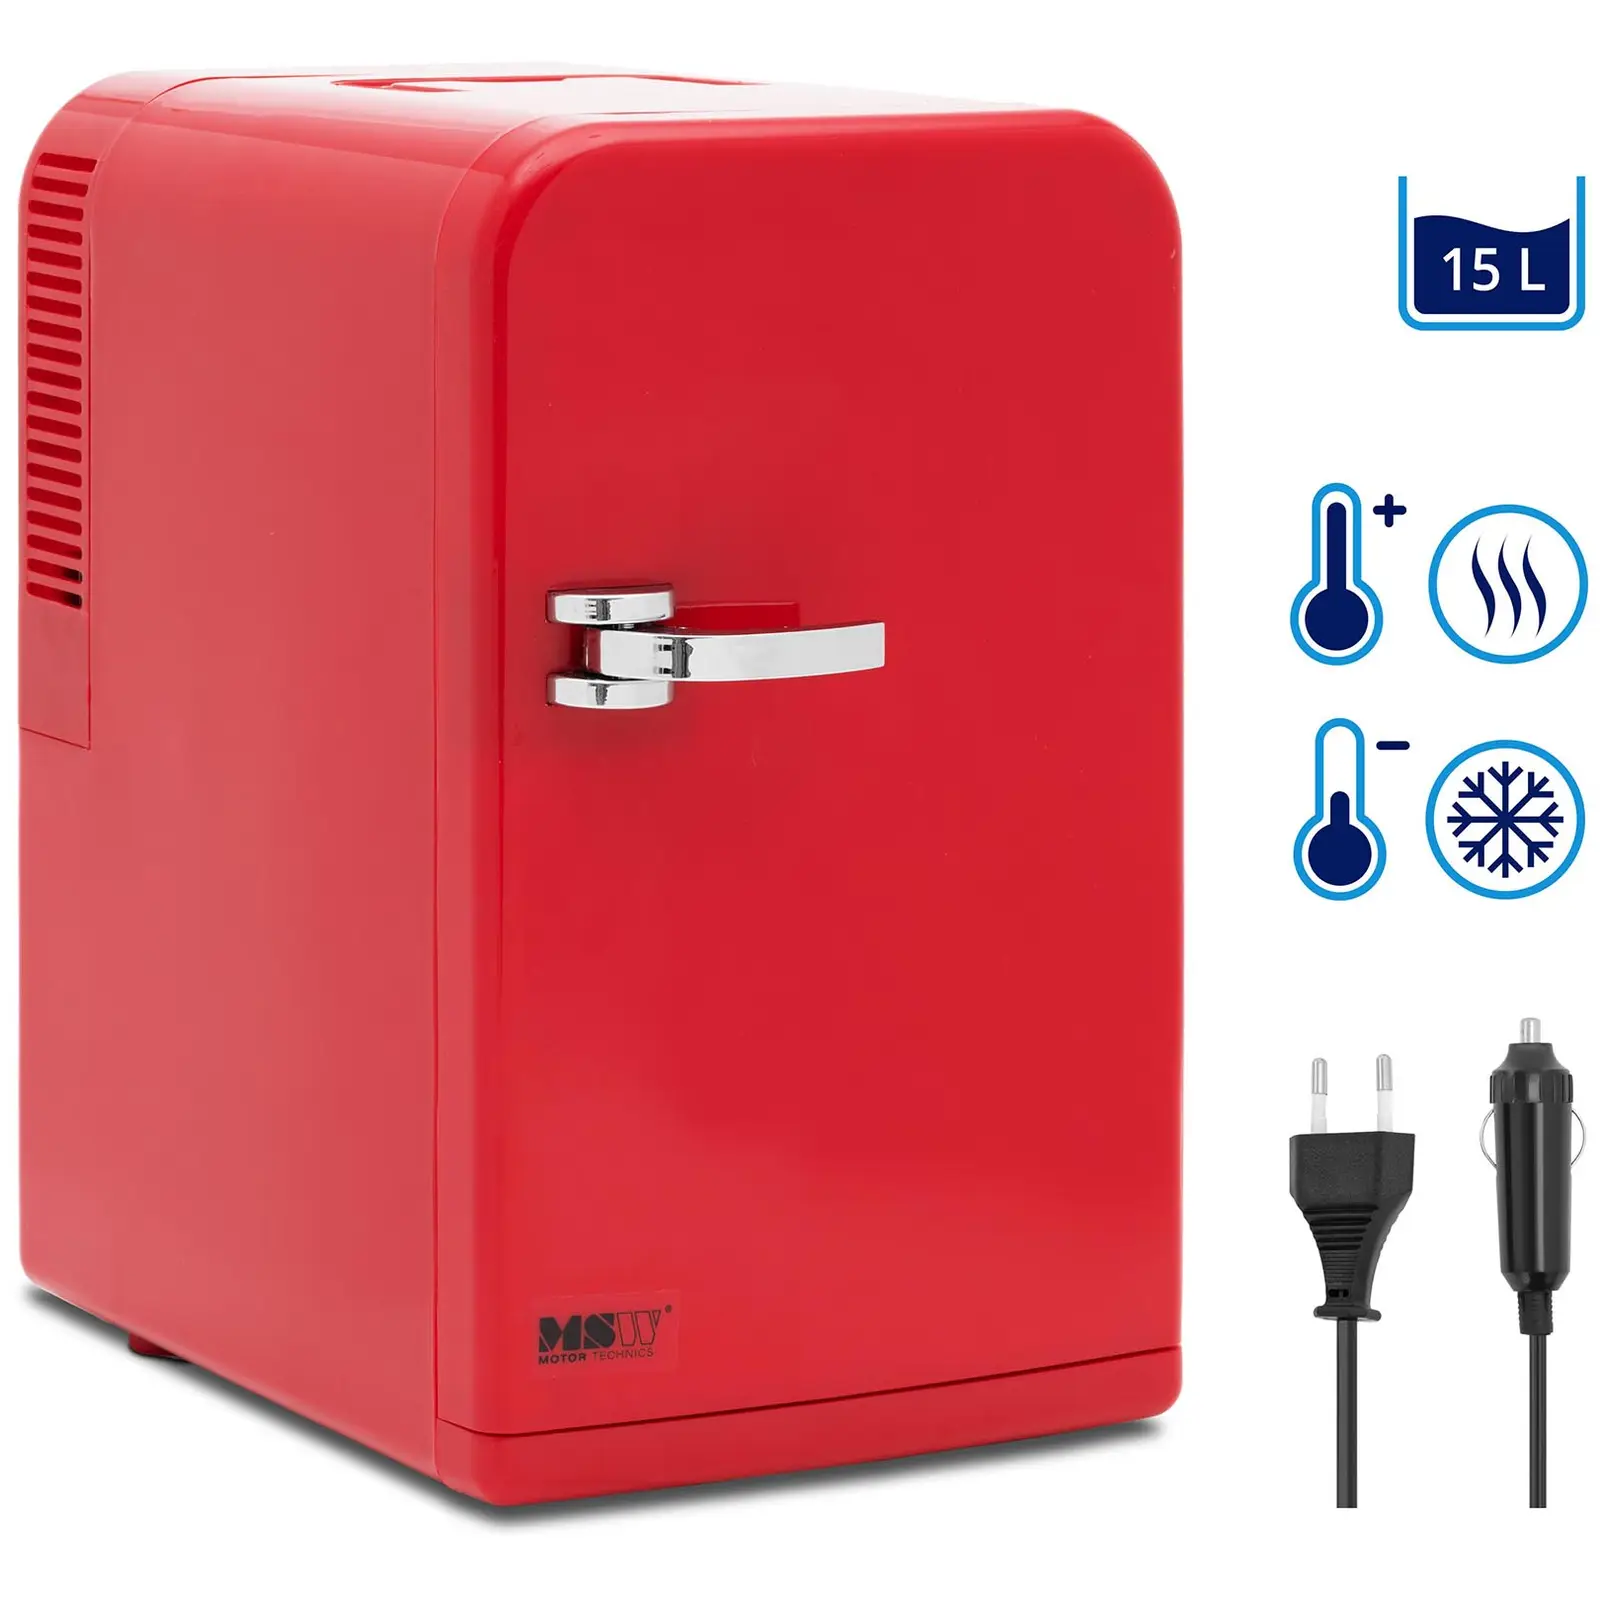 B-varer Minikjøleskap 12 V / 230 V - 2-i-1 apparat med holde-varm funksjon - 15 L - Rød